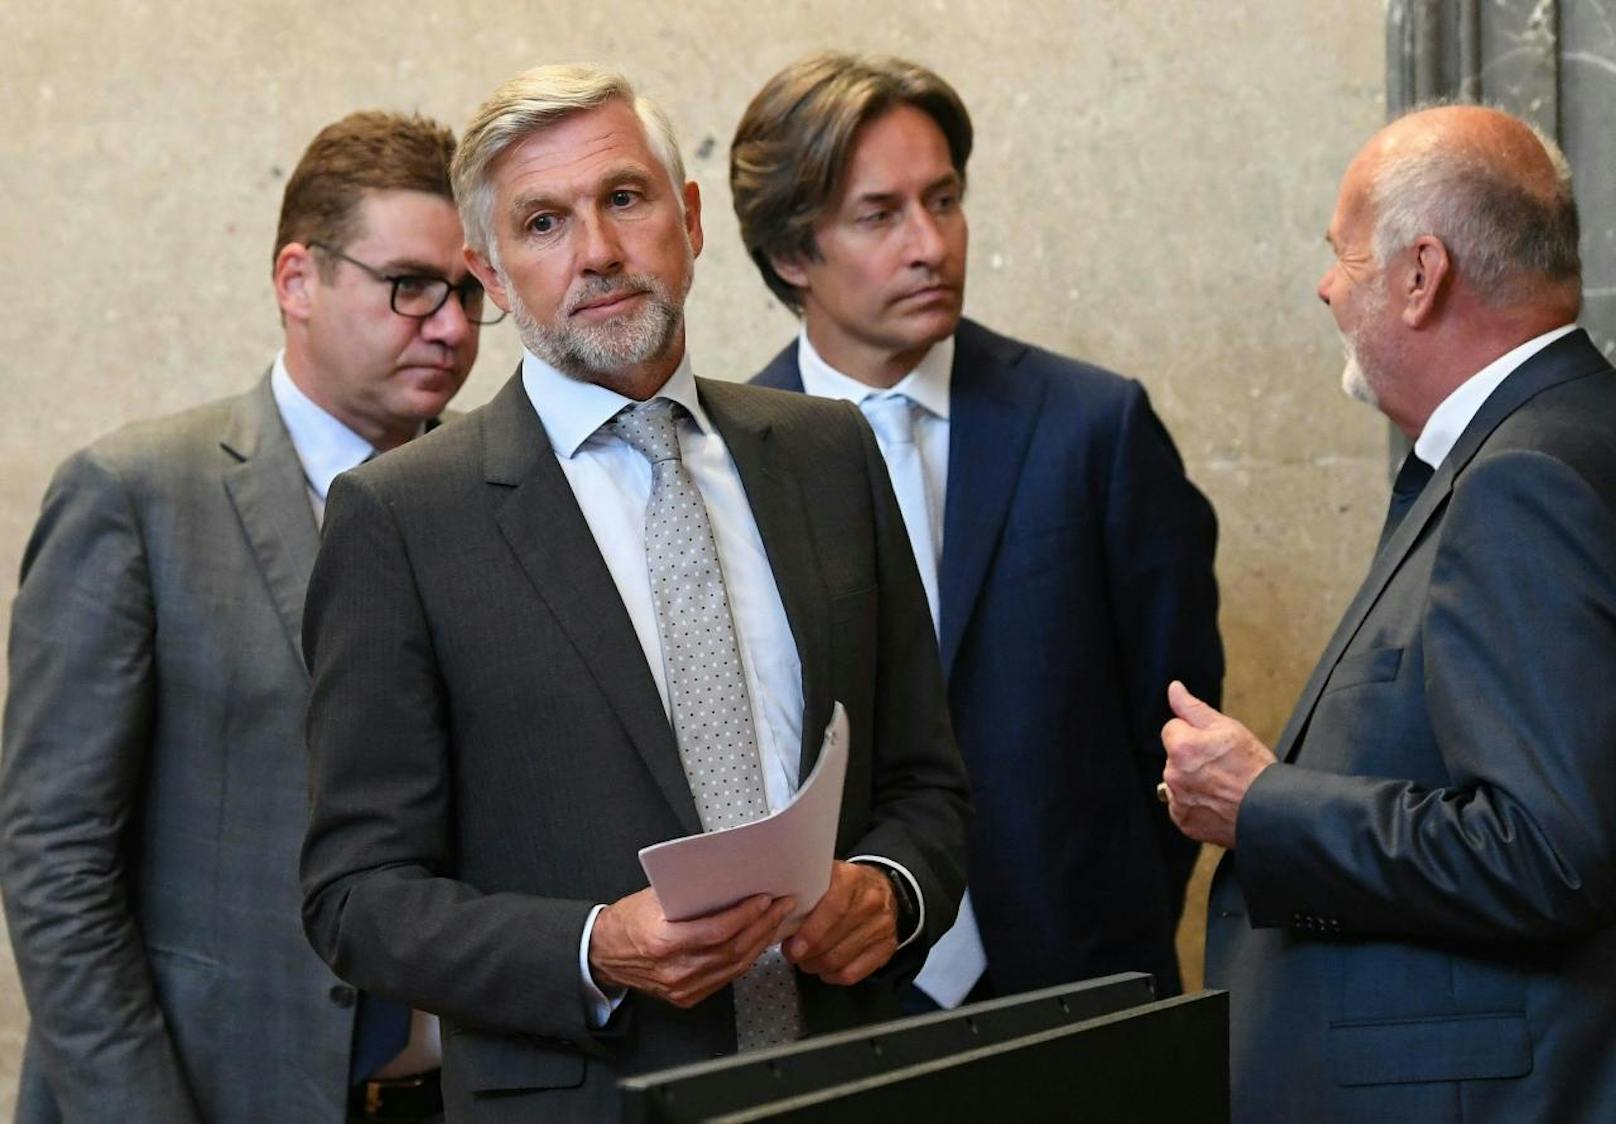 Anwalt Jörg Zarbl, die Angeklagten Walter Meischberger und Karl Heinz Grasser sowie Anwalt Manfred Ainedter 